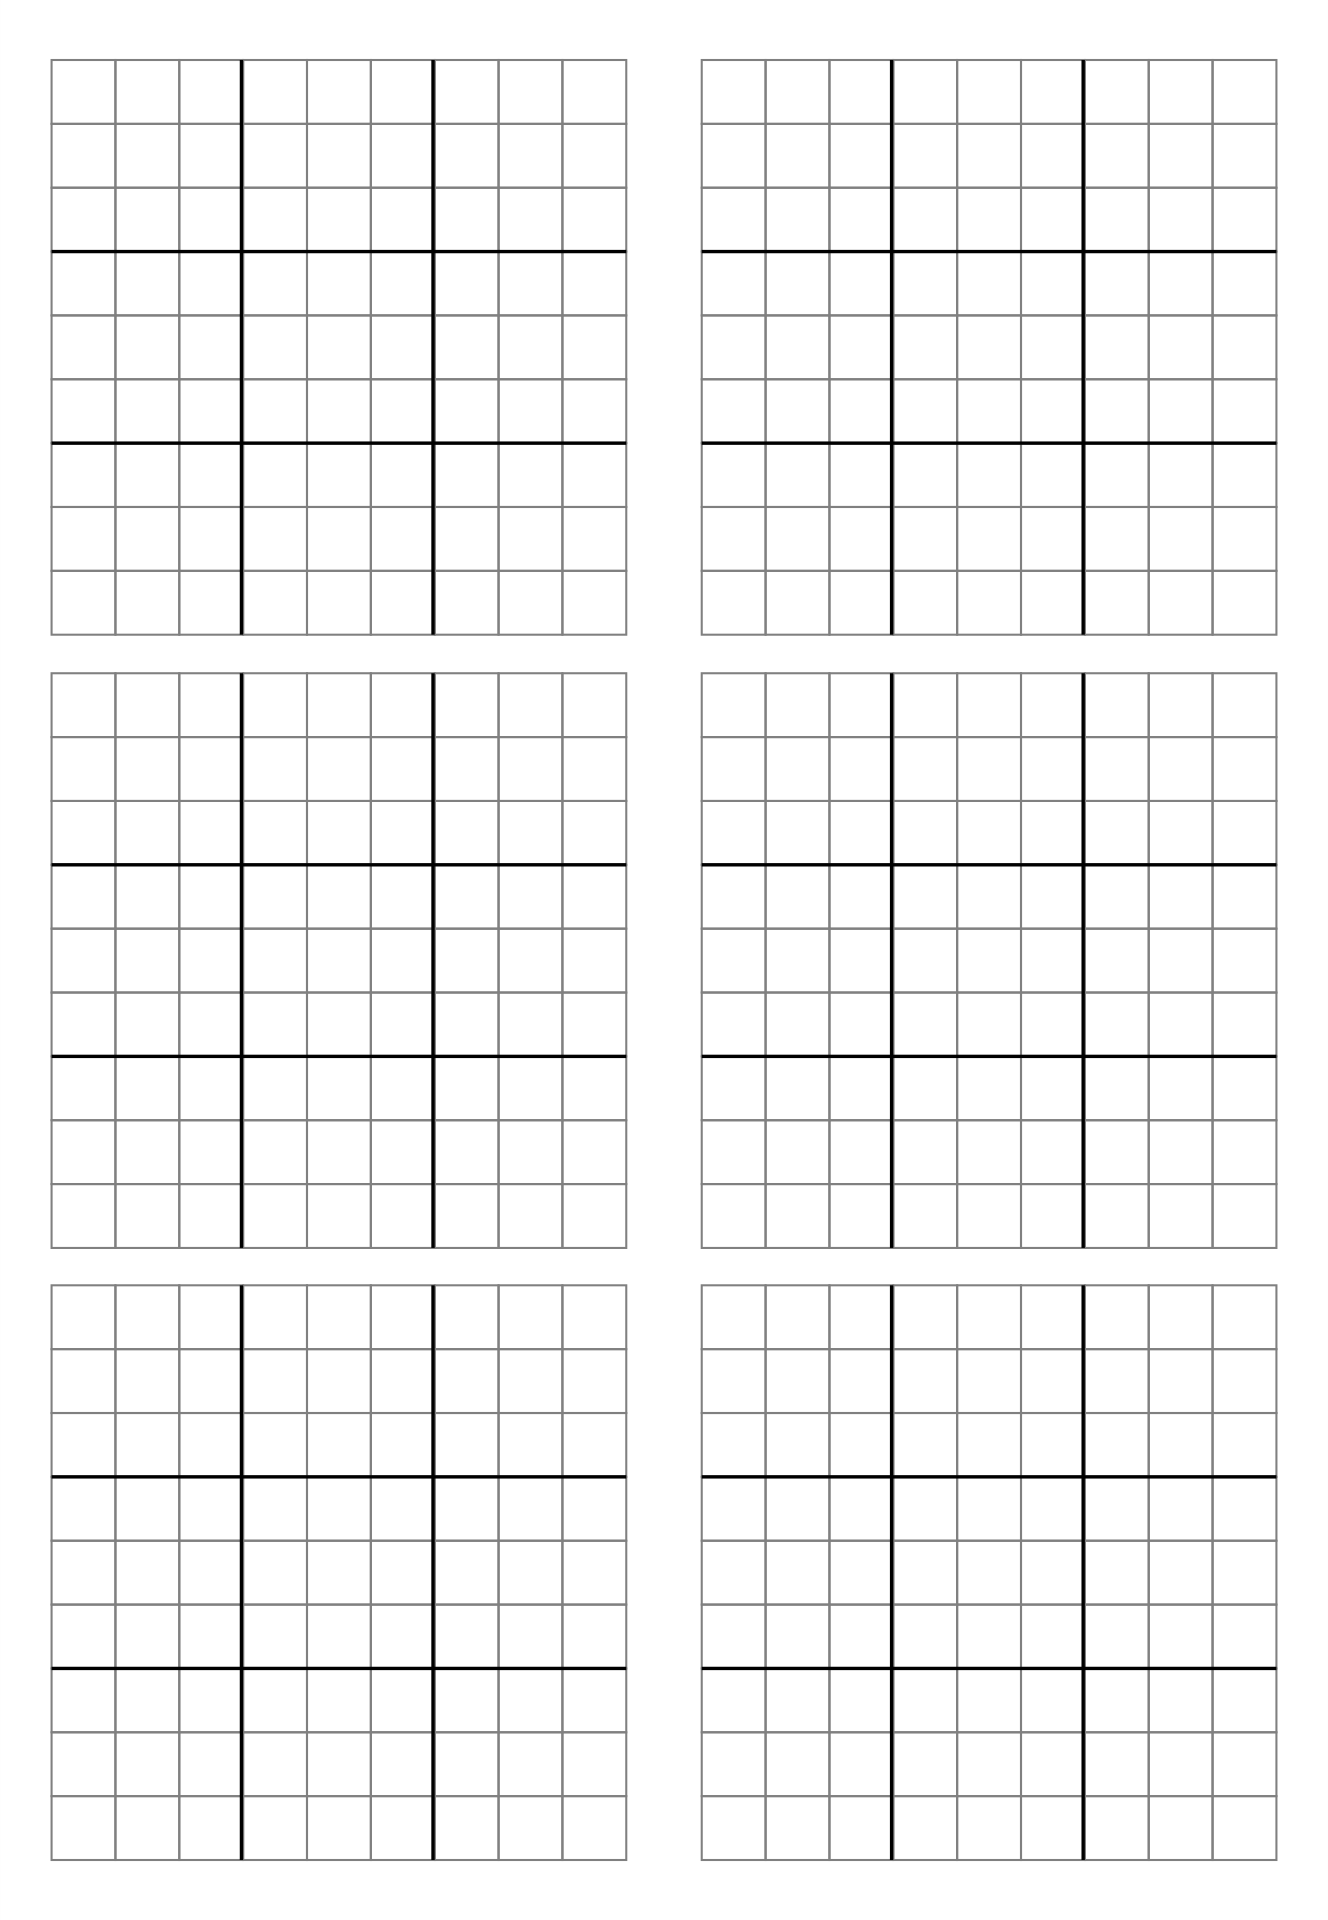 blank-printable-sudoku-customize-and-print